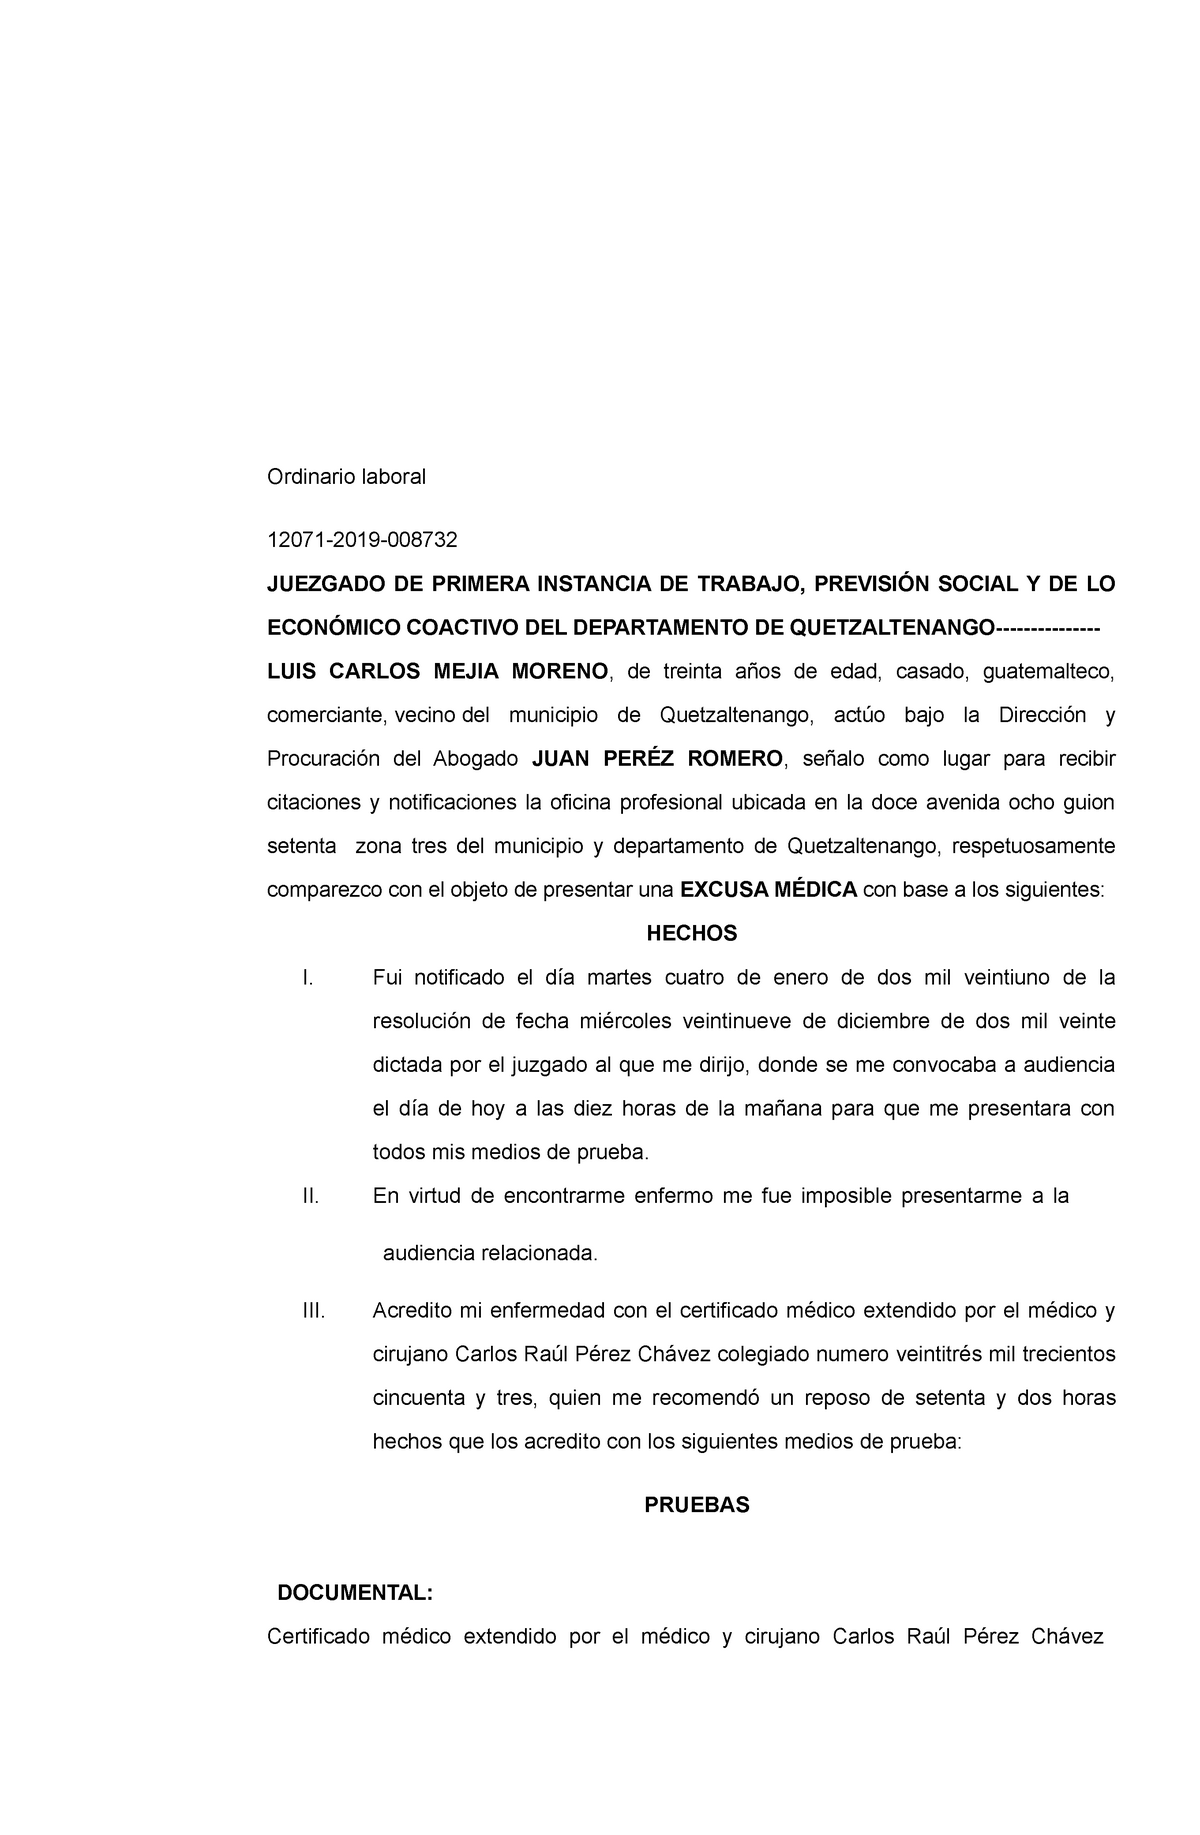 Memorial excusa médica laboral - Ordinario laboral 12071-2019- JUEZGADO DE  PRIMERA INSTANCIA DE - Studocu